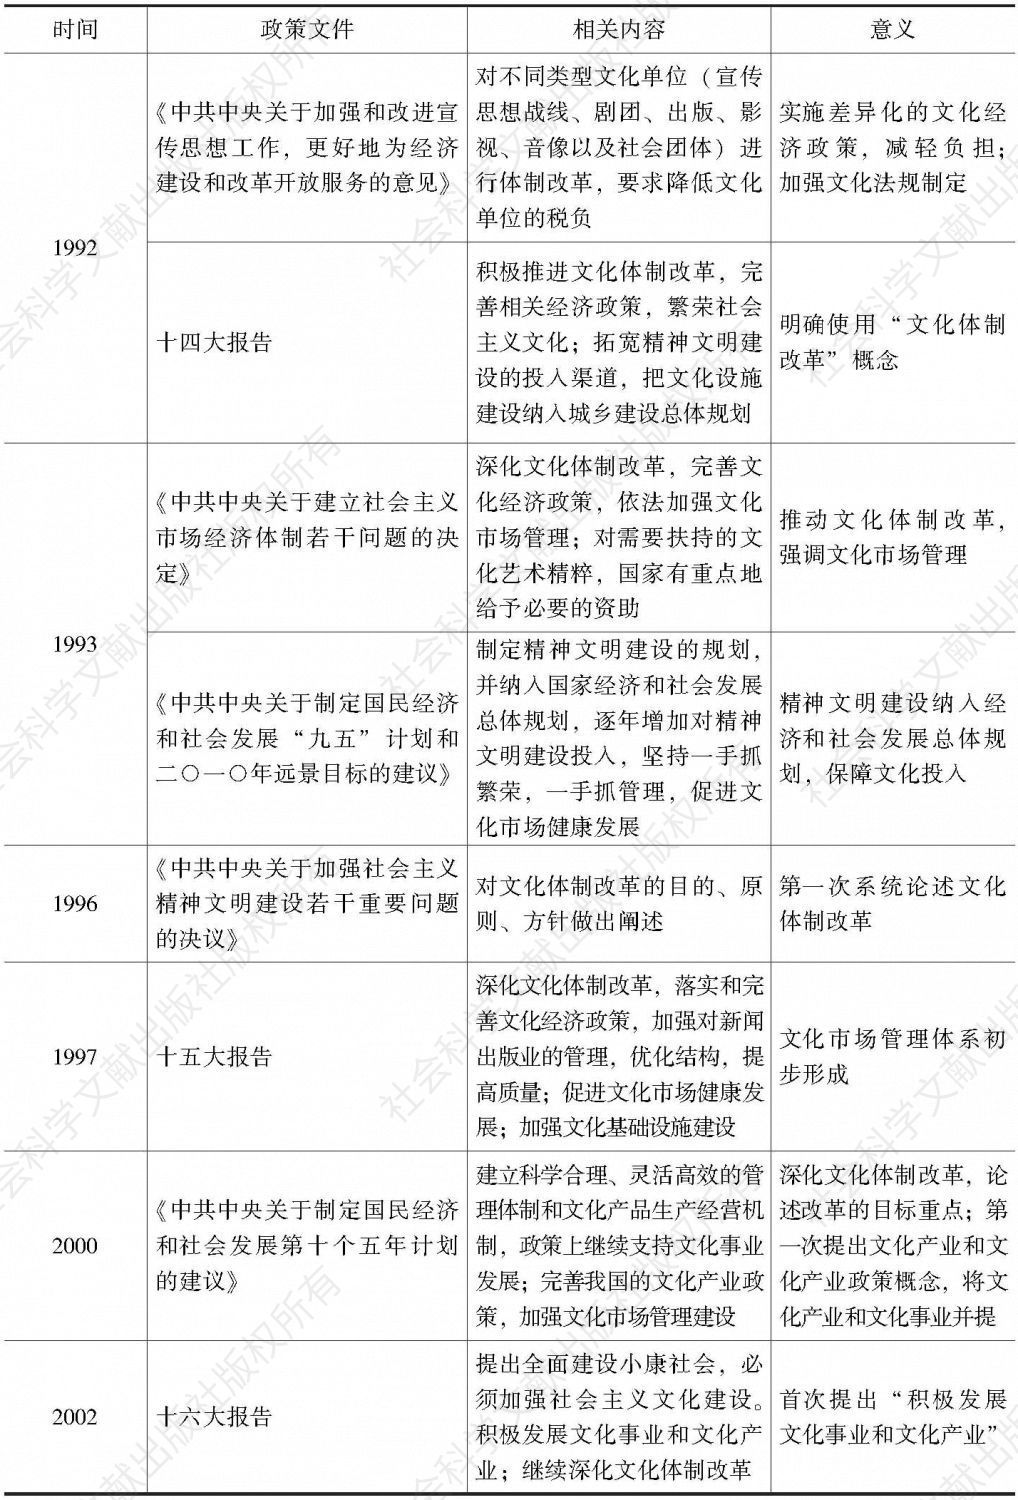 表4-2 1992～2002年我国关于文化体制改革的政策文件